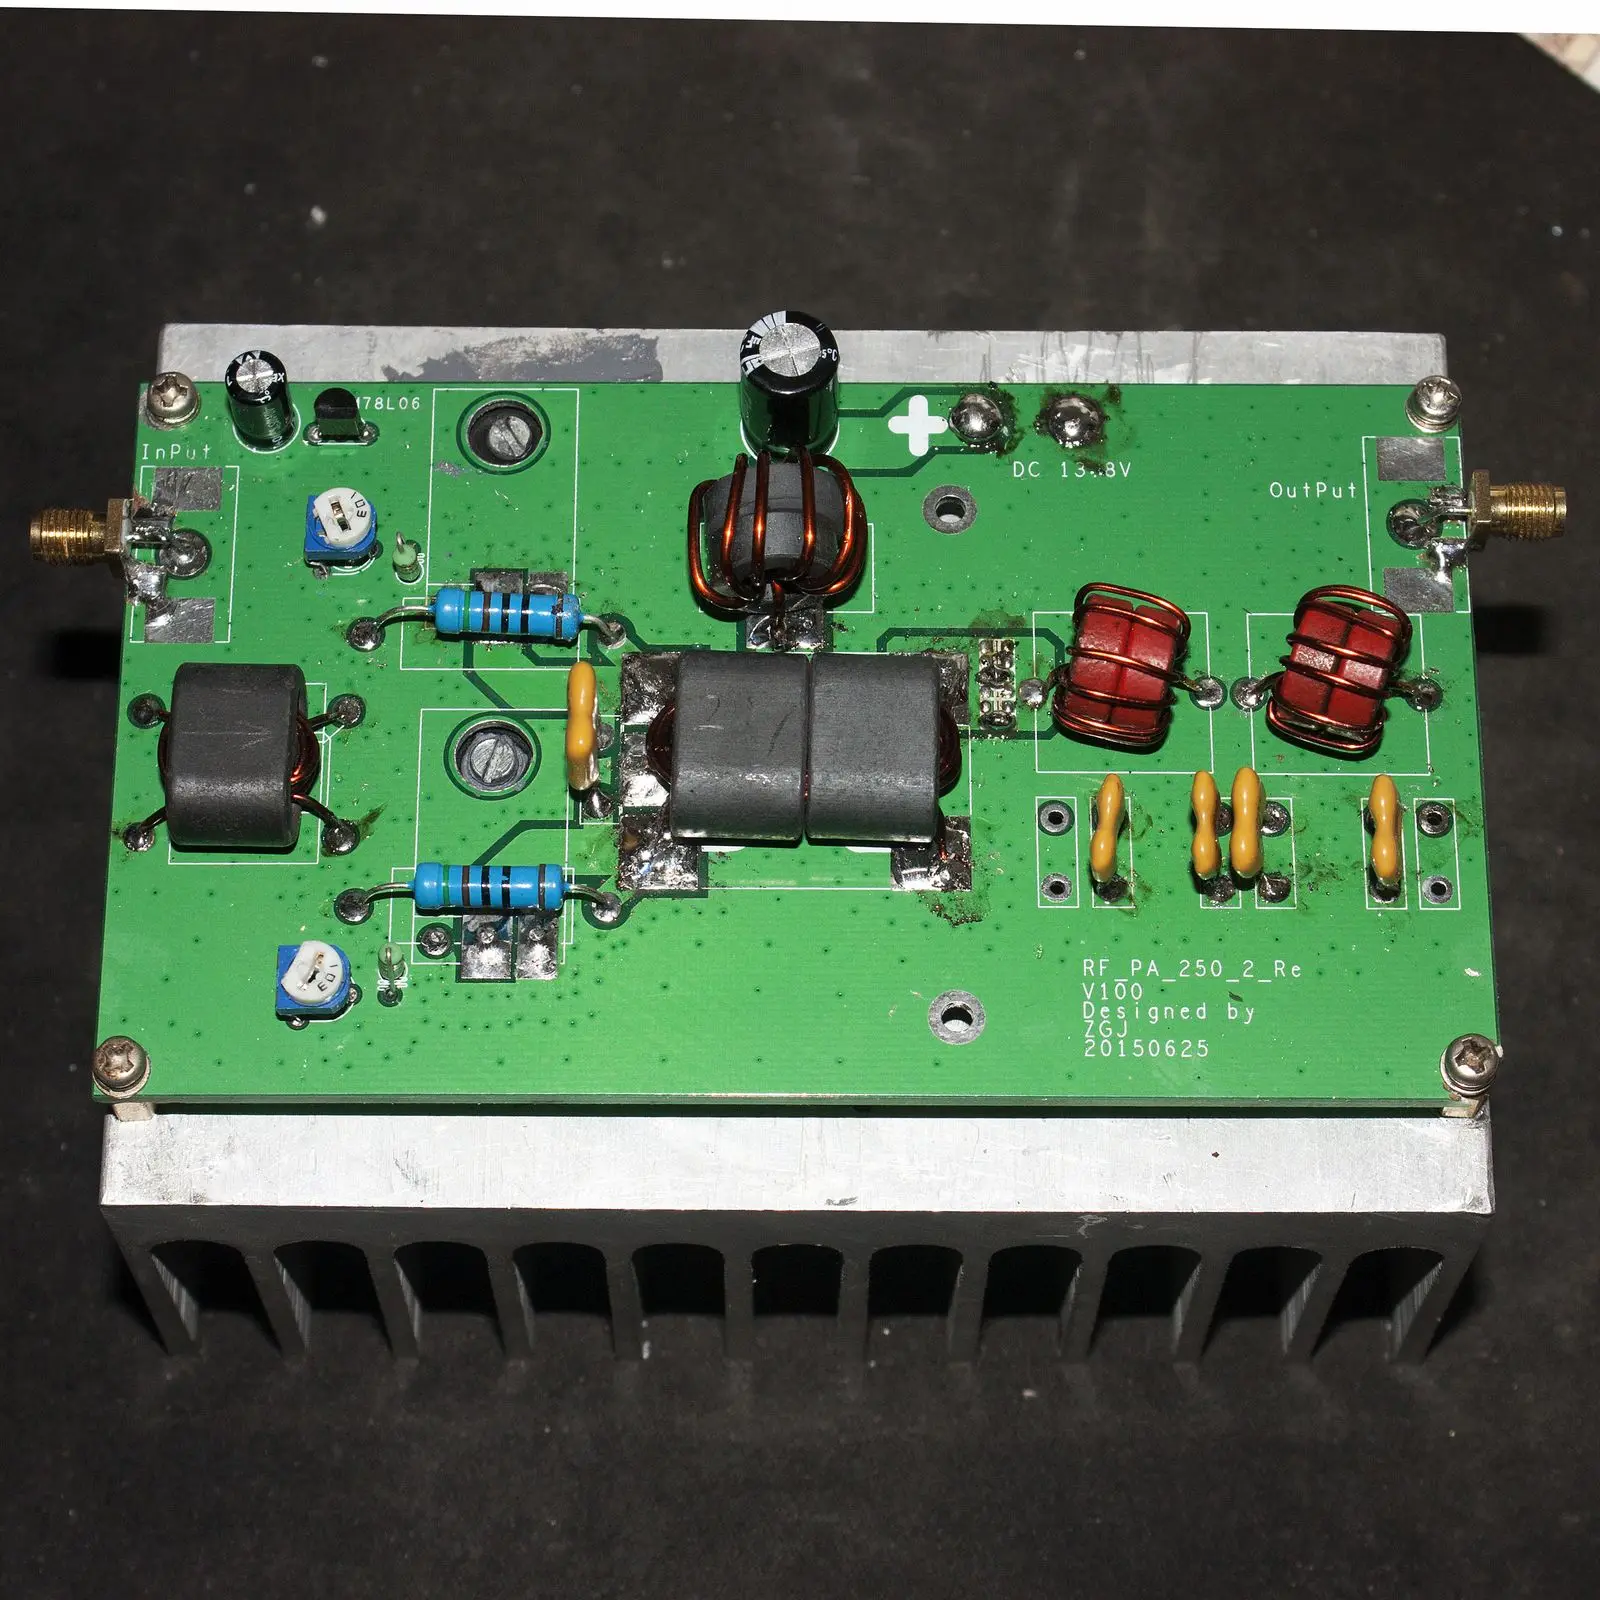 

Assembled100W HF Linear High Frequency RF Power Amplifier SSB CW Transceiver + 7M/14M LPF Low Pass Filter